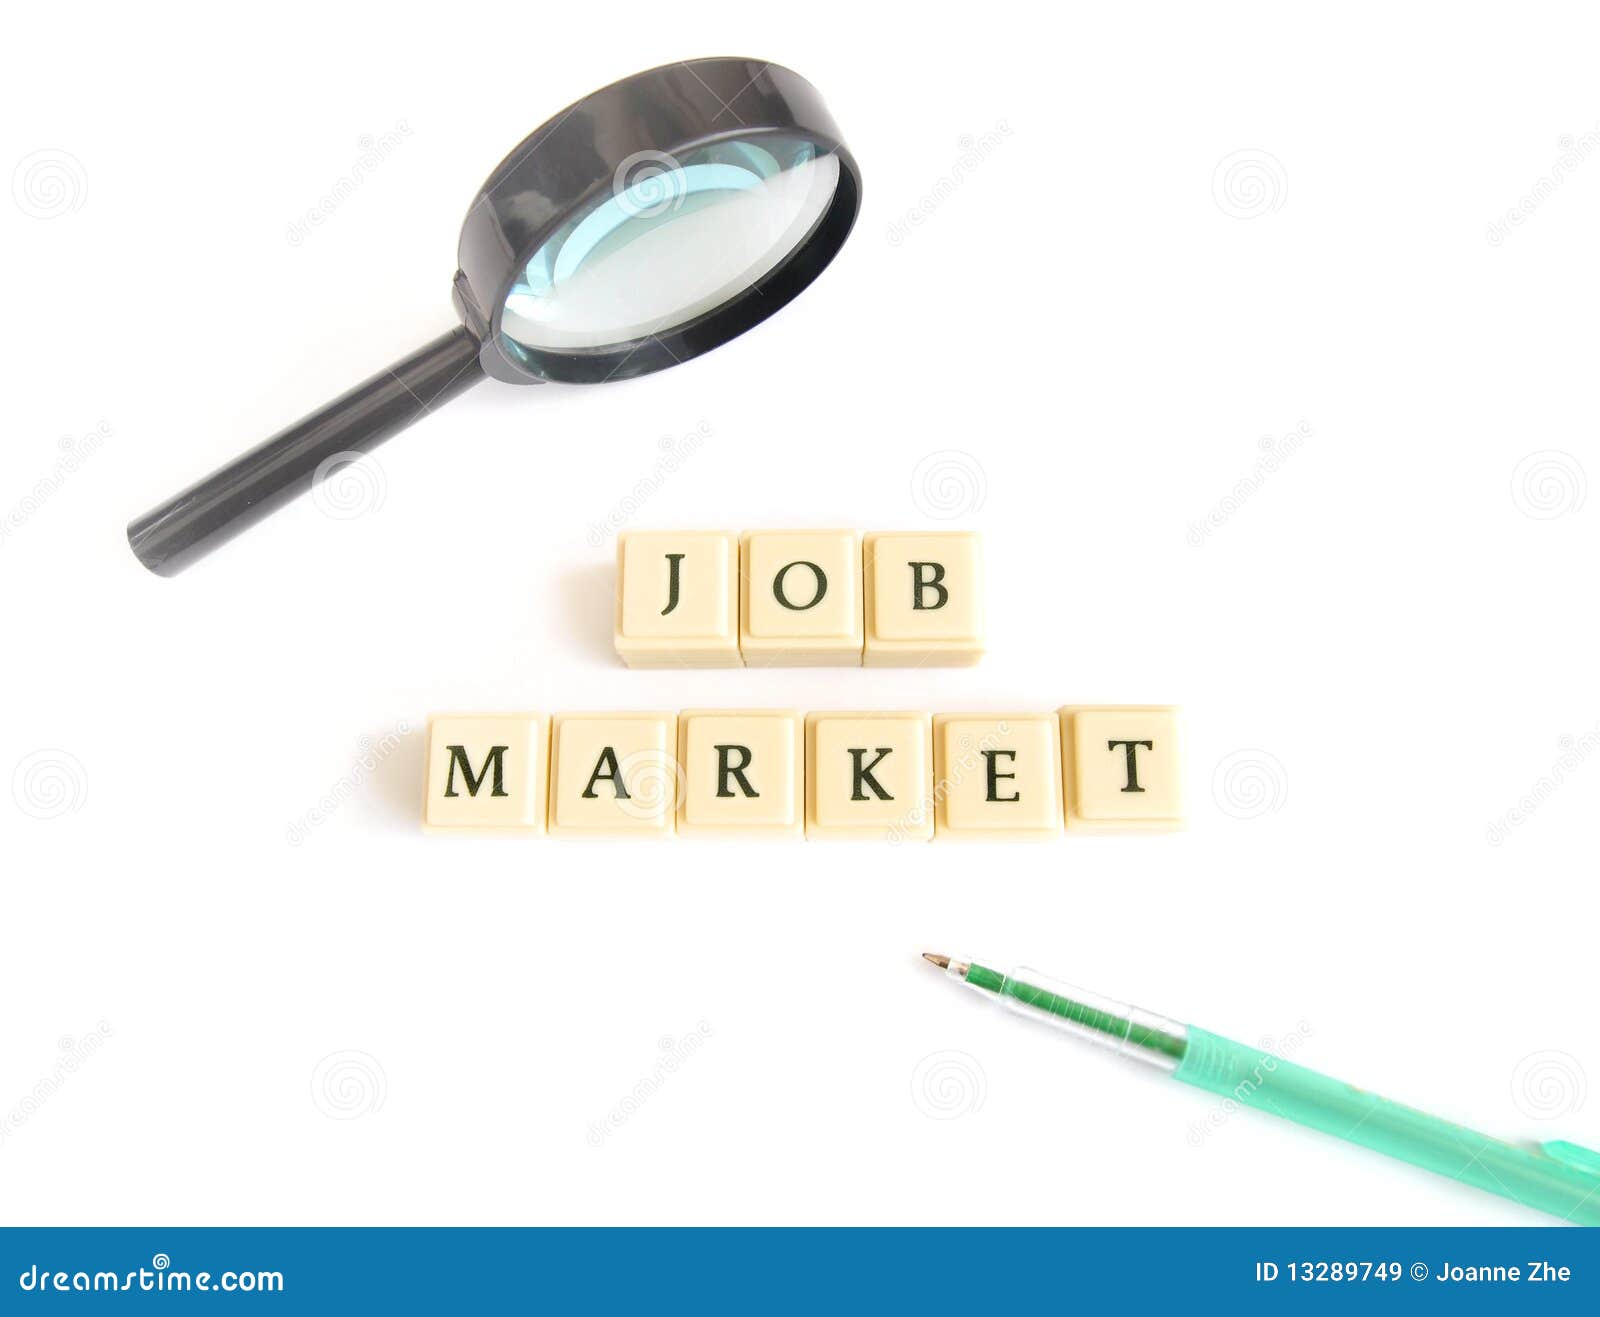 job market